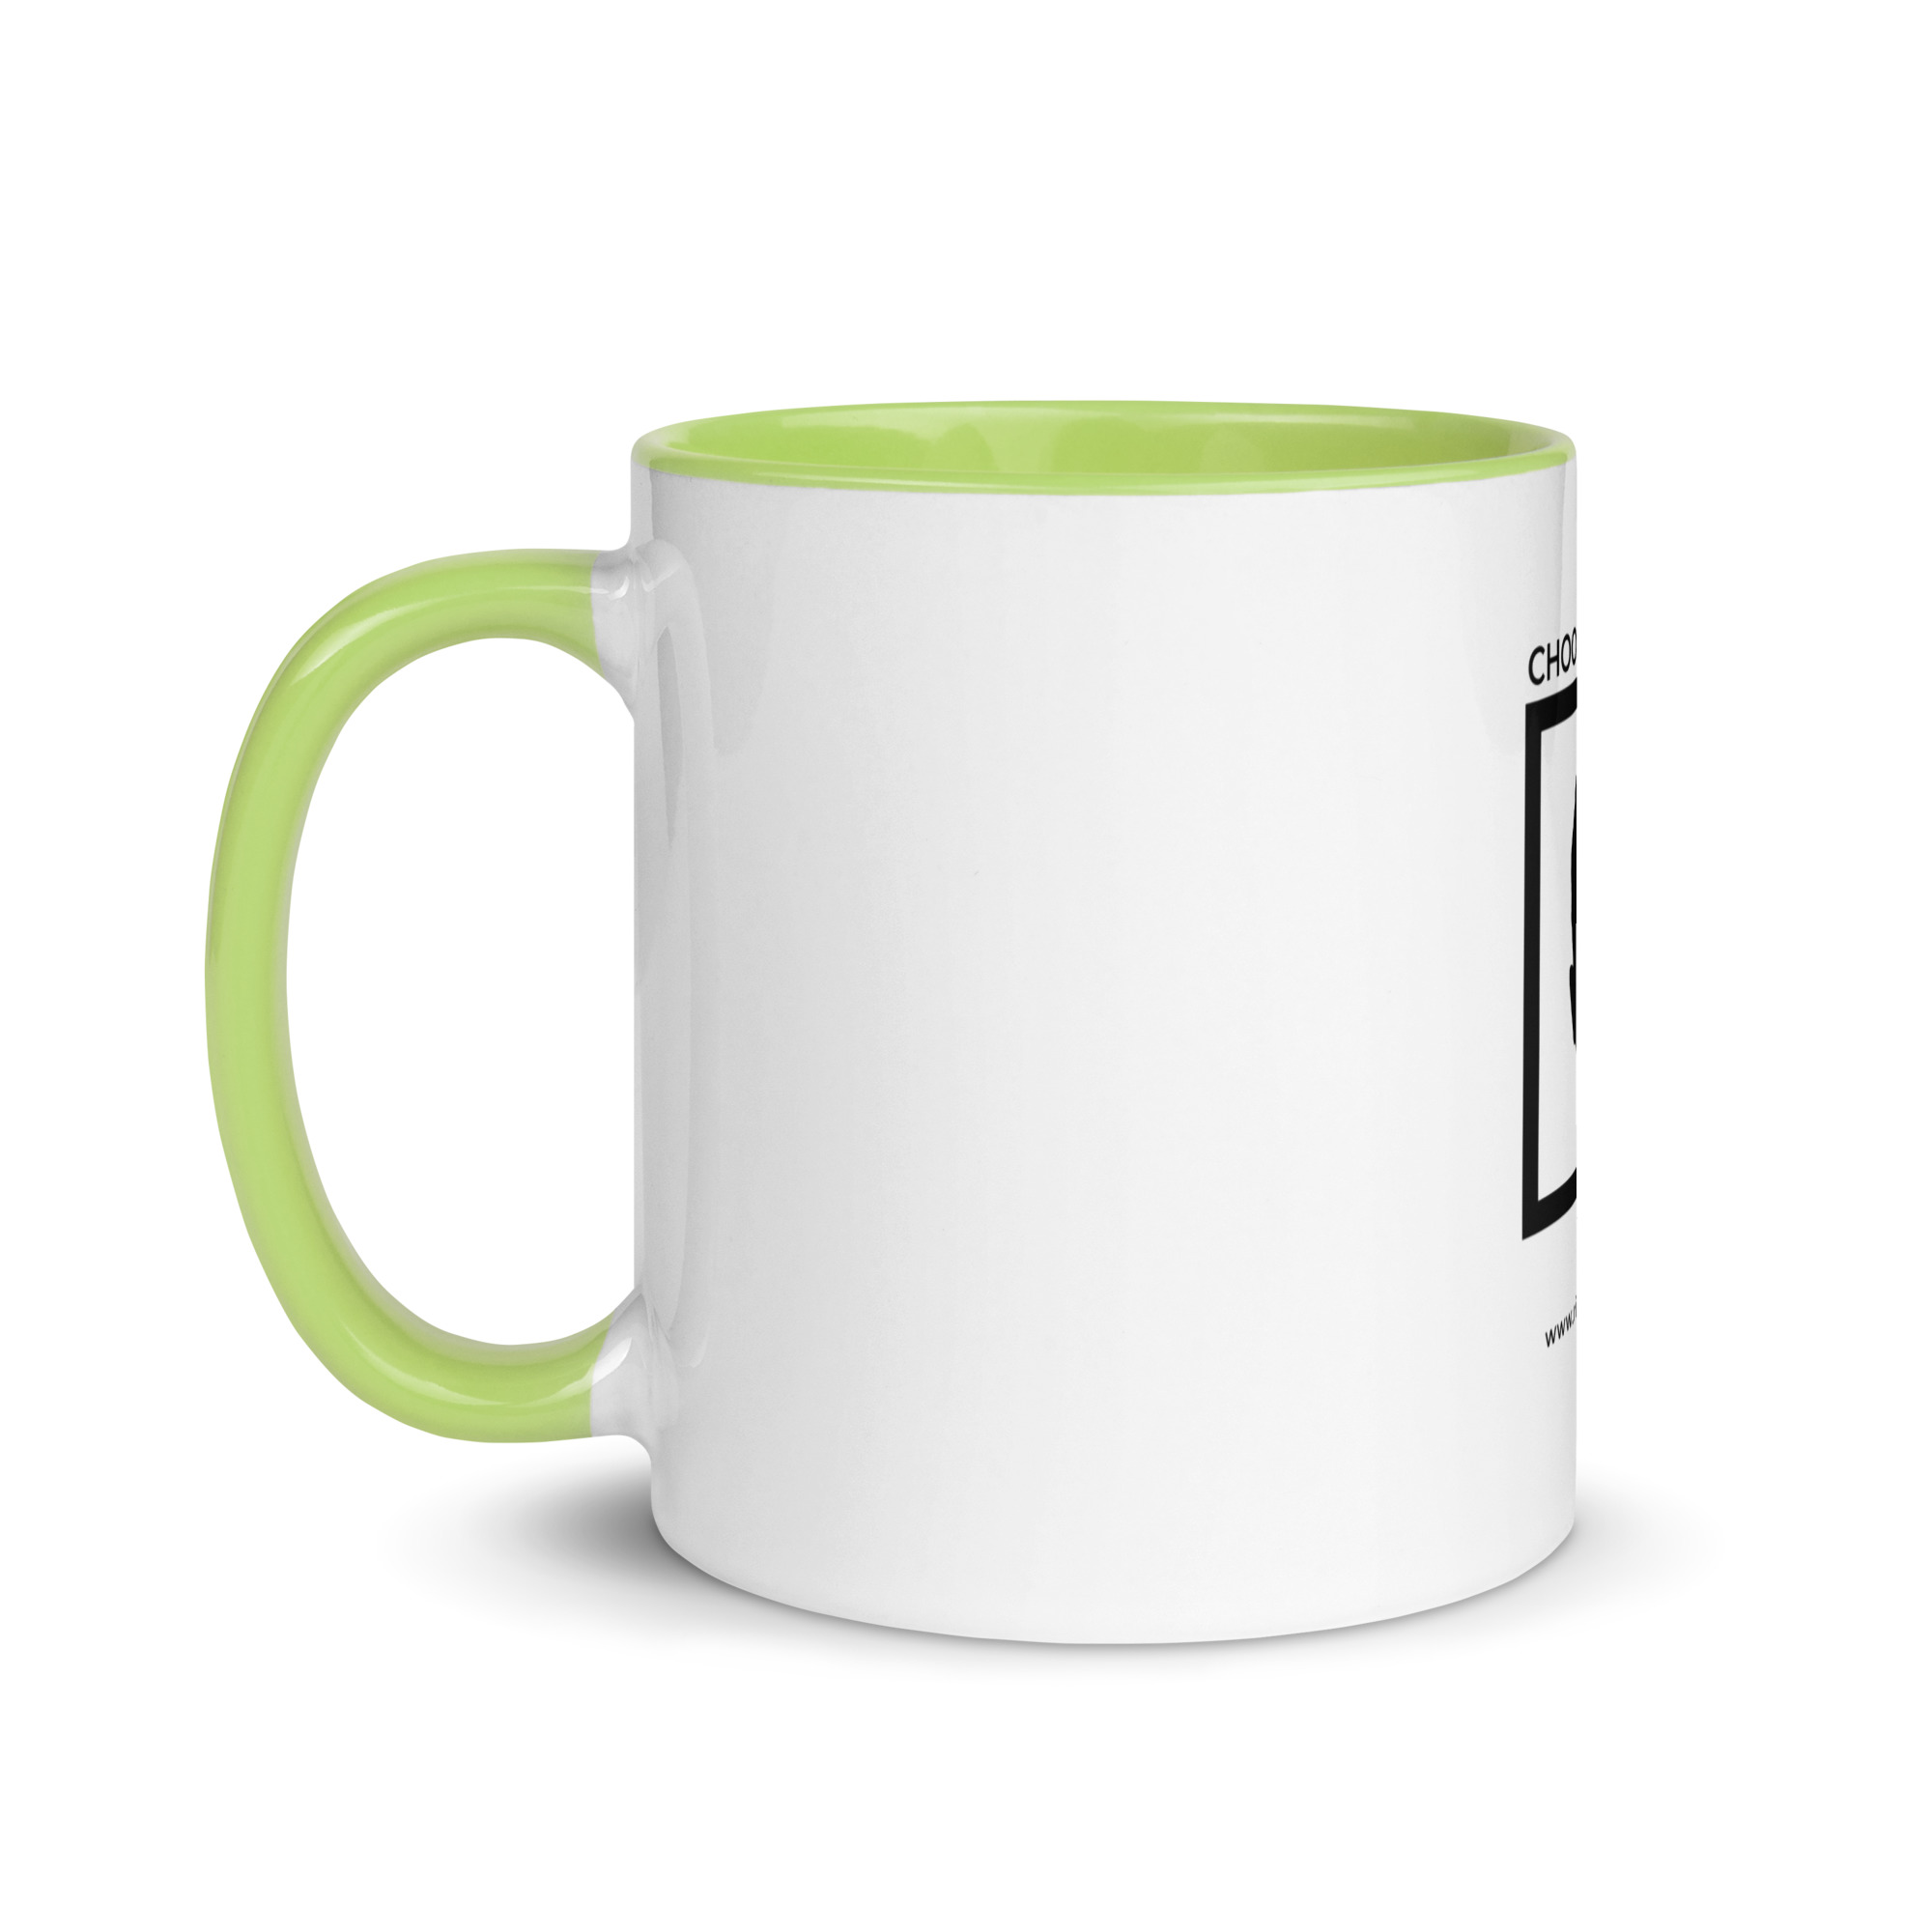 white-ceramic-mug-with-color-inside-green-11-oz-left-6522a1a404489.jpg